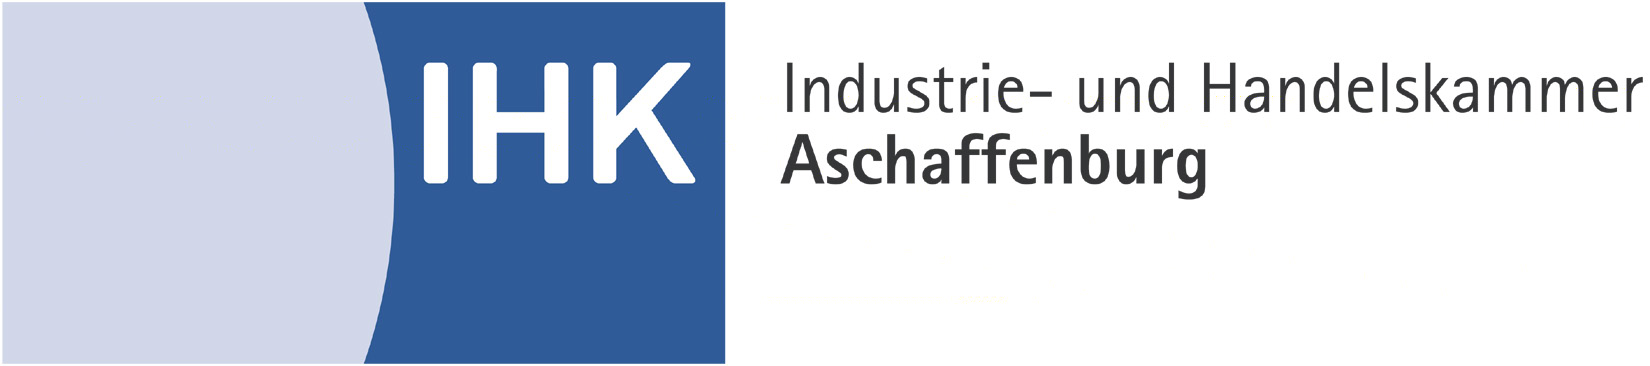 Industrie- und Handelskammer Aschaffenburg